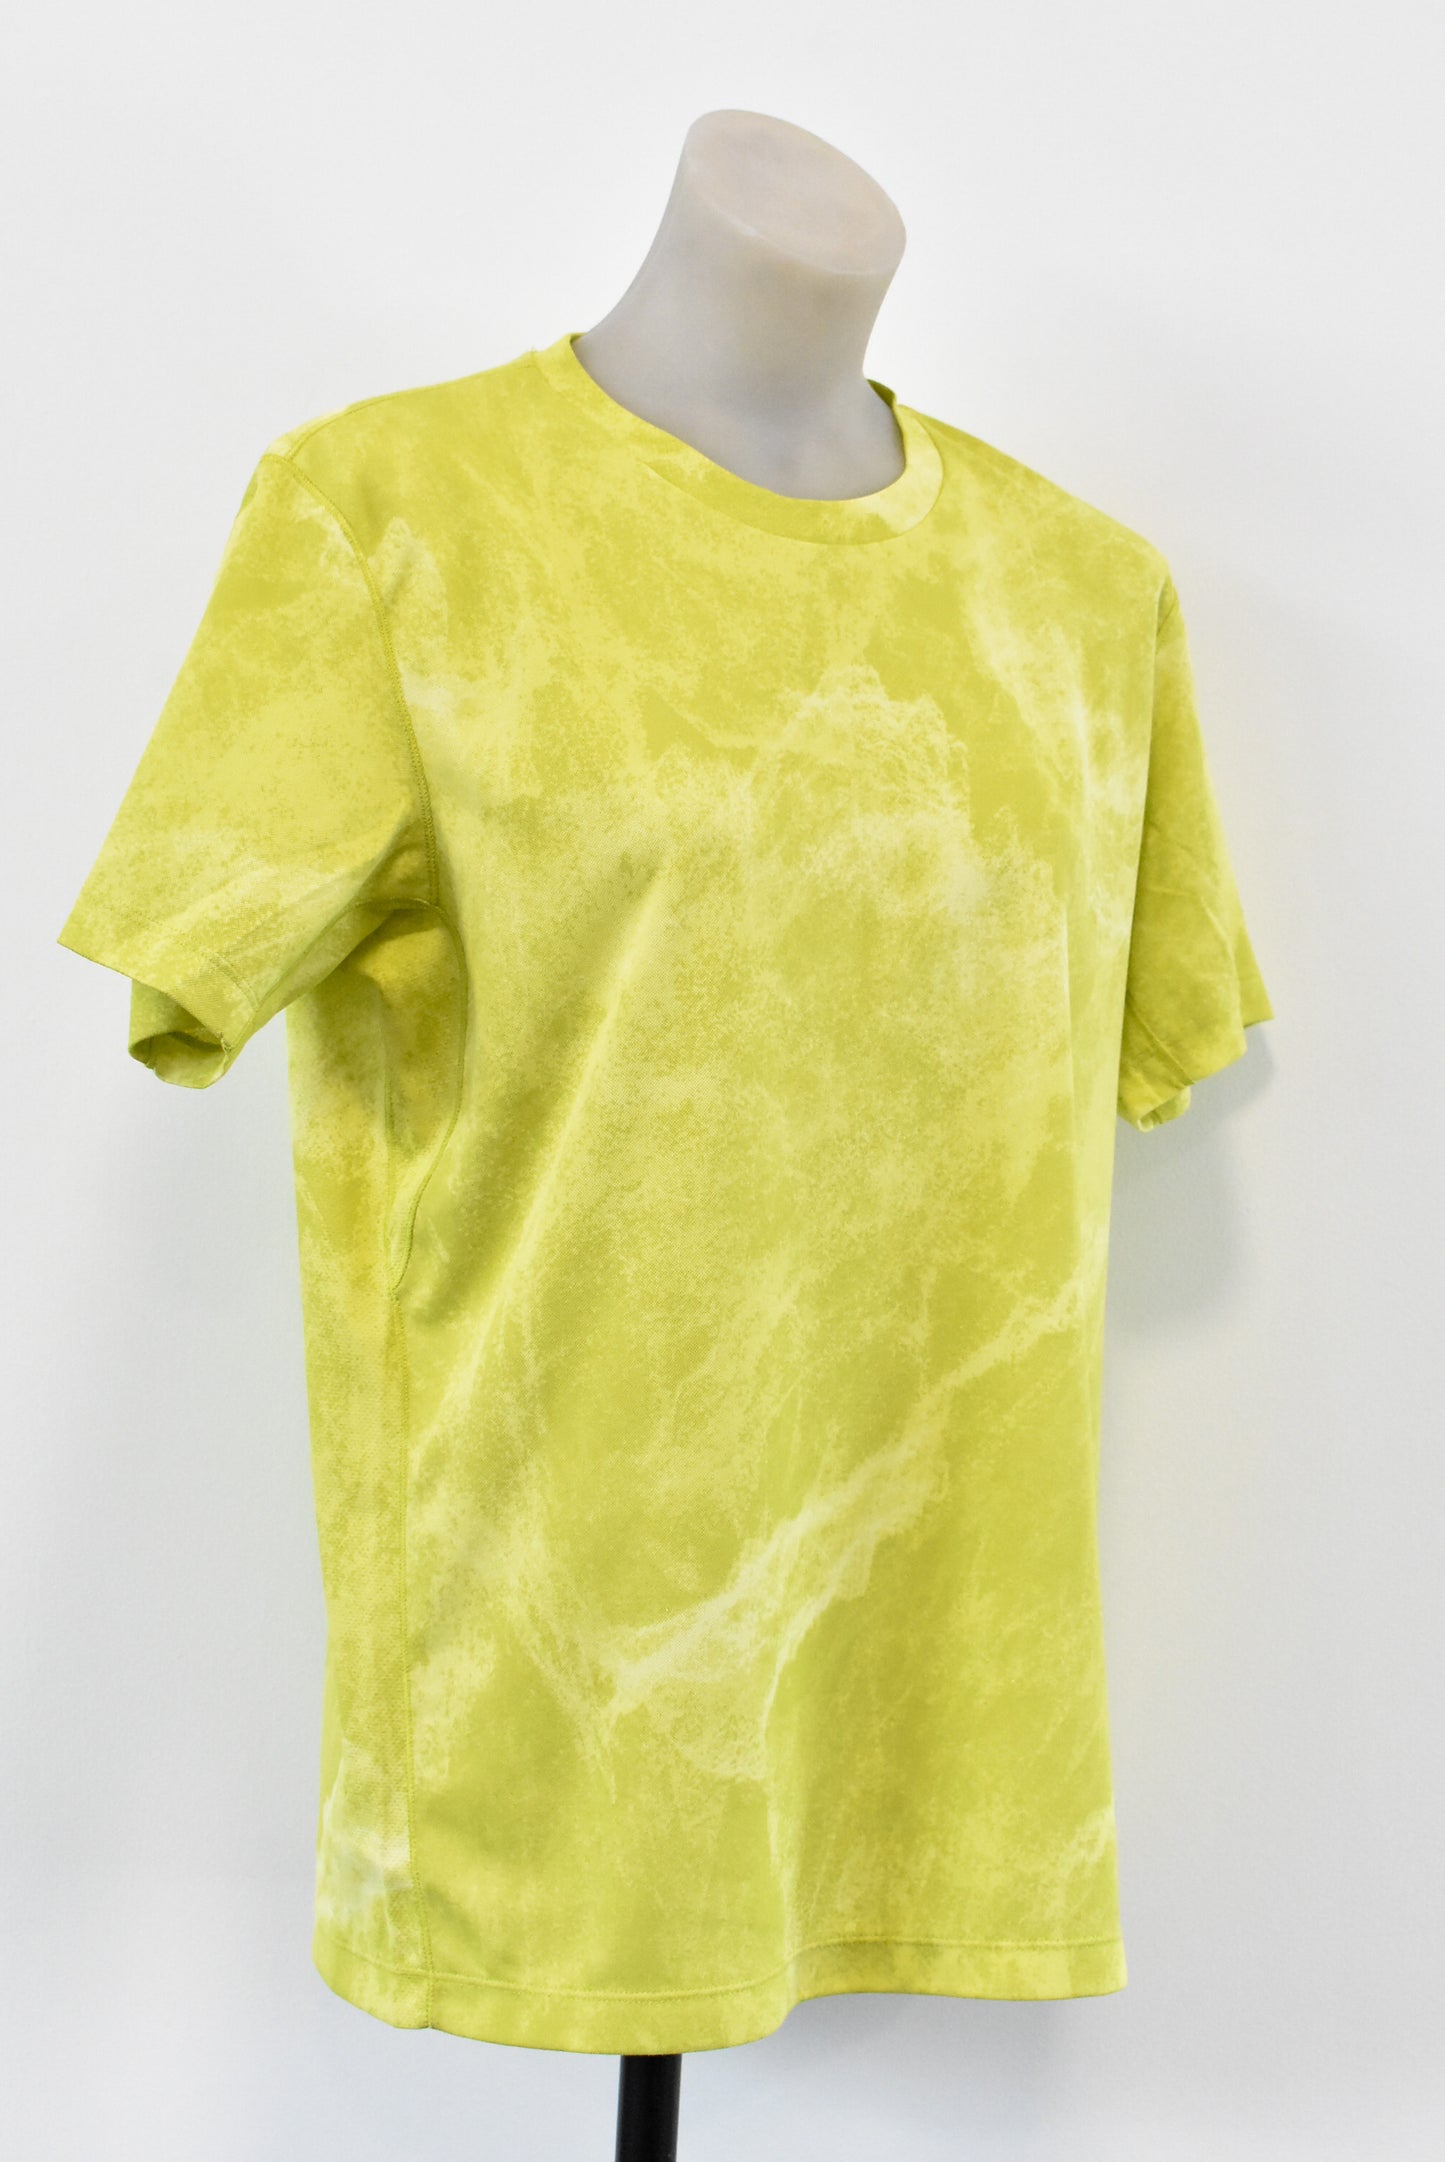 Uniqlo greenish yellow shirt, L